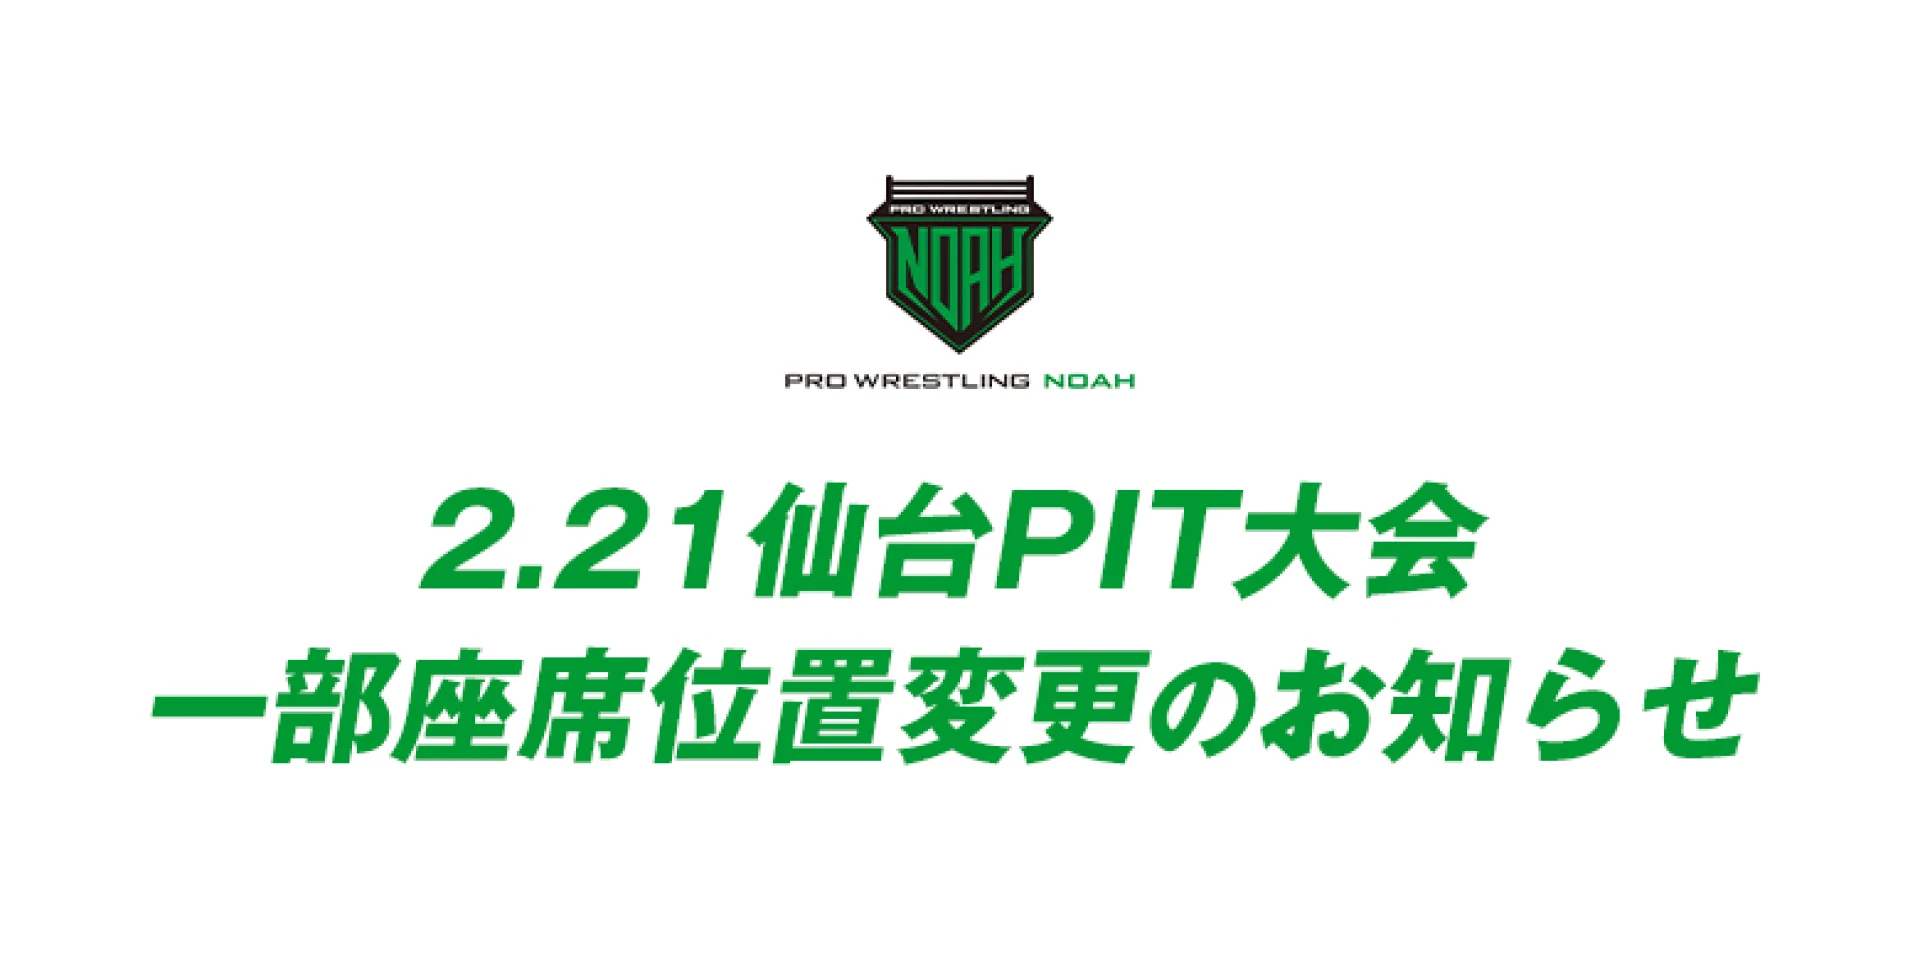 2月21日(日)仙台PIT大会につきまして